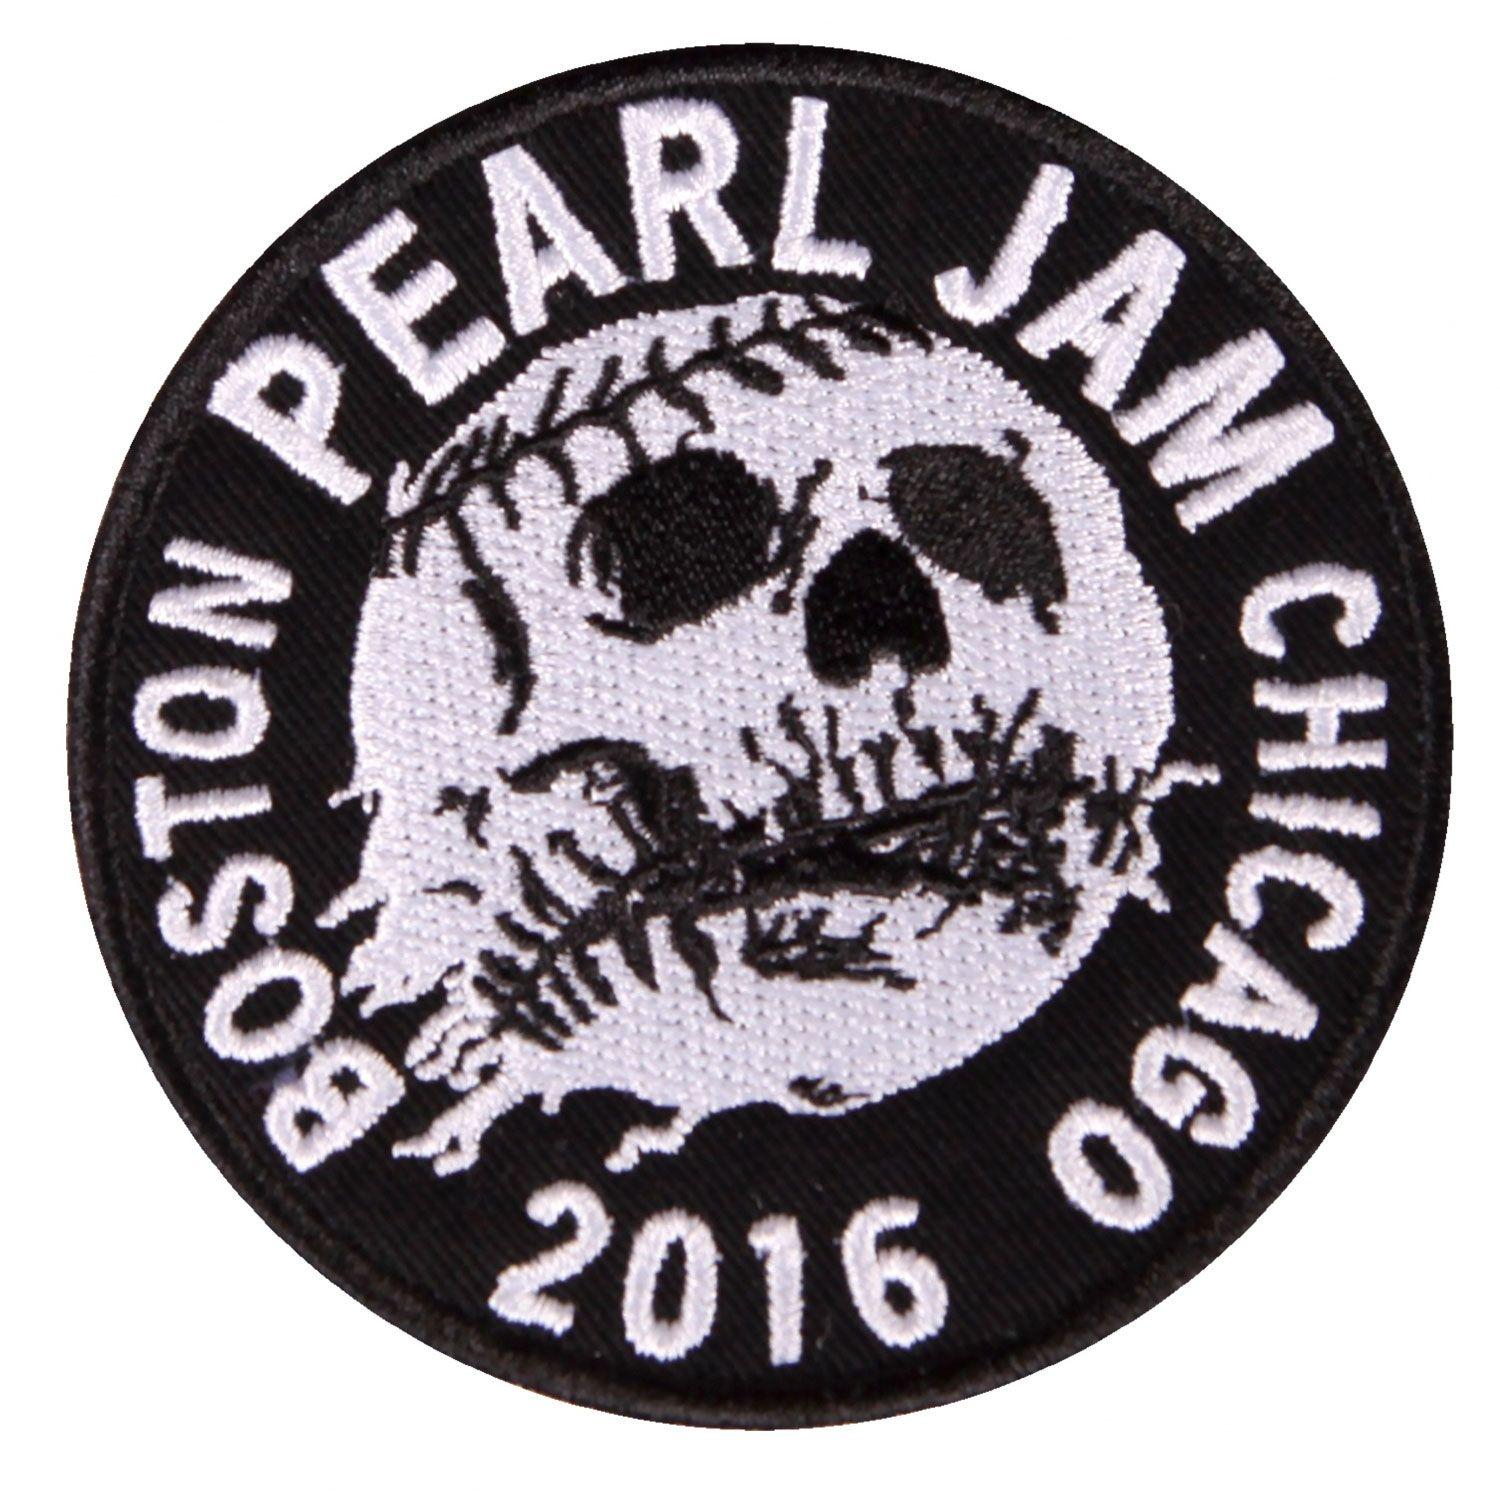 Pearl Jam Skull Logo - Pearl Jam - Boston Chicago Skull Ball Patch - Shop